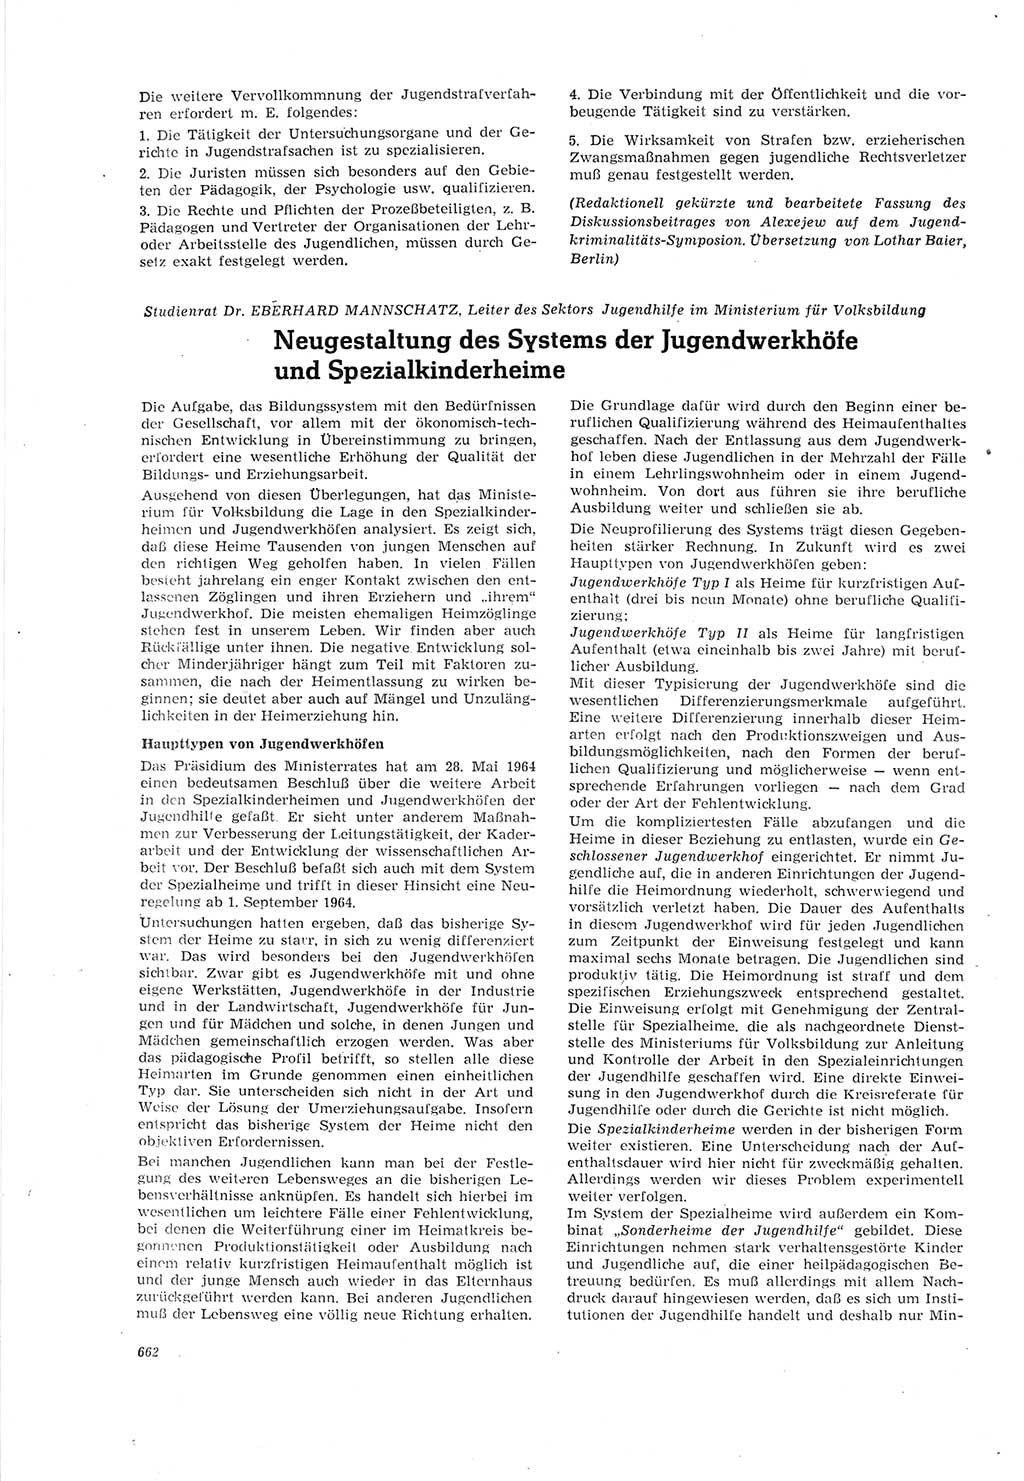 Neue Justiz (NJ), Zeitschrift für Recht und Rechtswissenschaft [Deutsche Demokratische Republik (DDR)], 18. Jahrgang 1964, Seite 662 (NJ DDR 1964, S. 662)